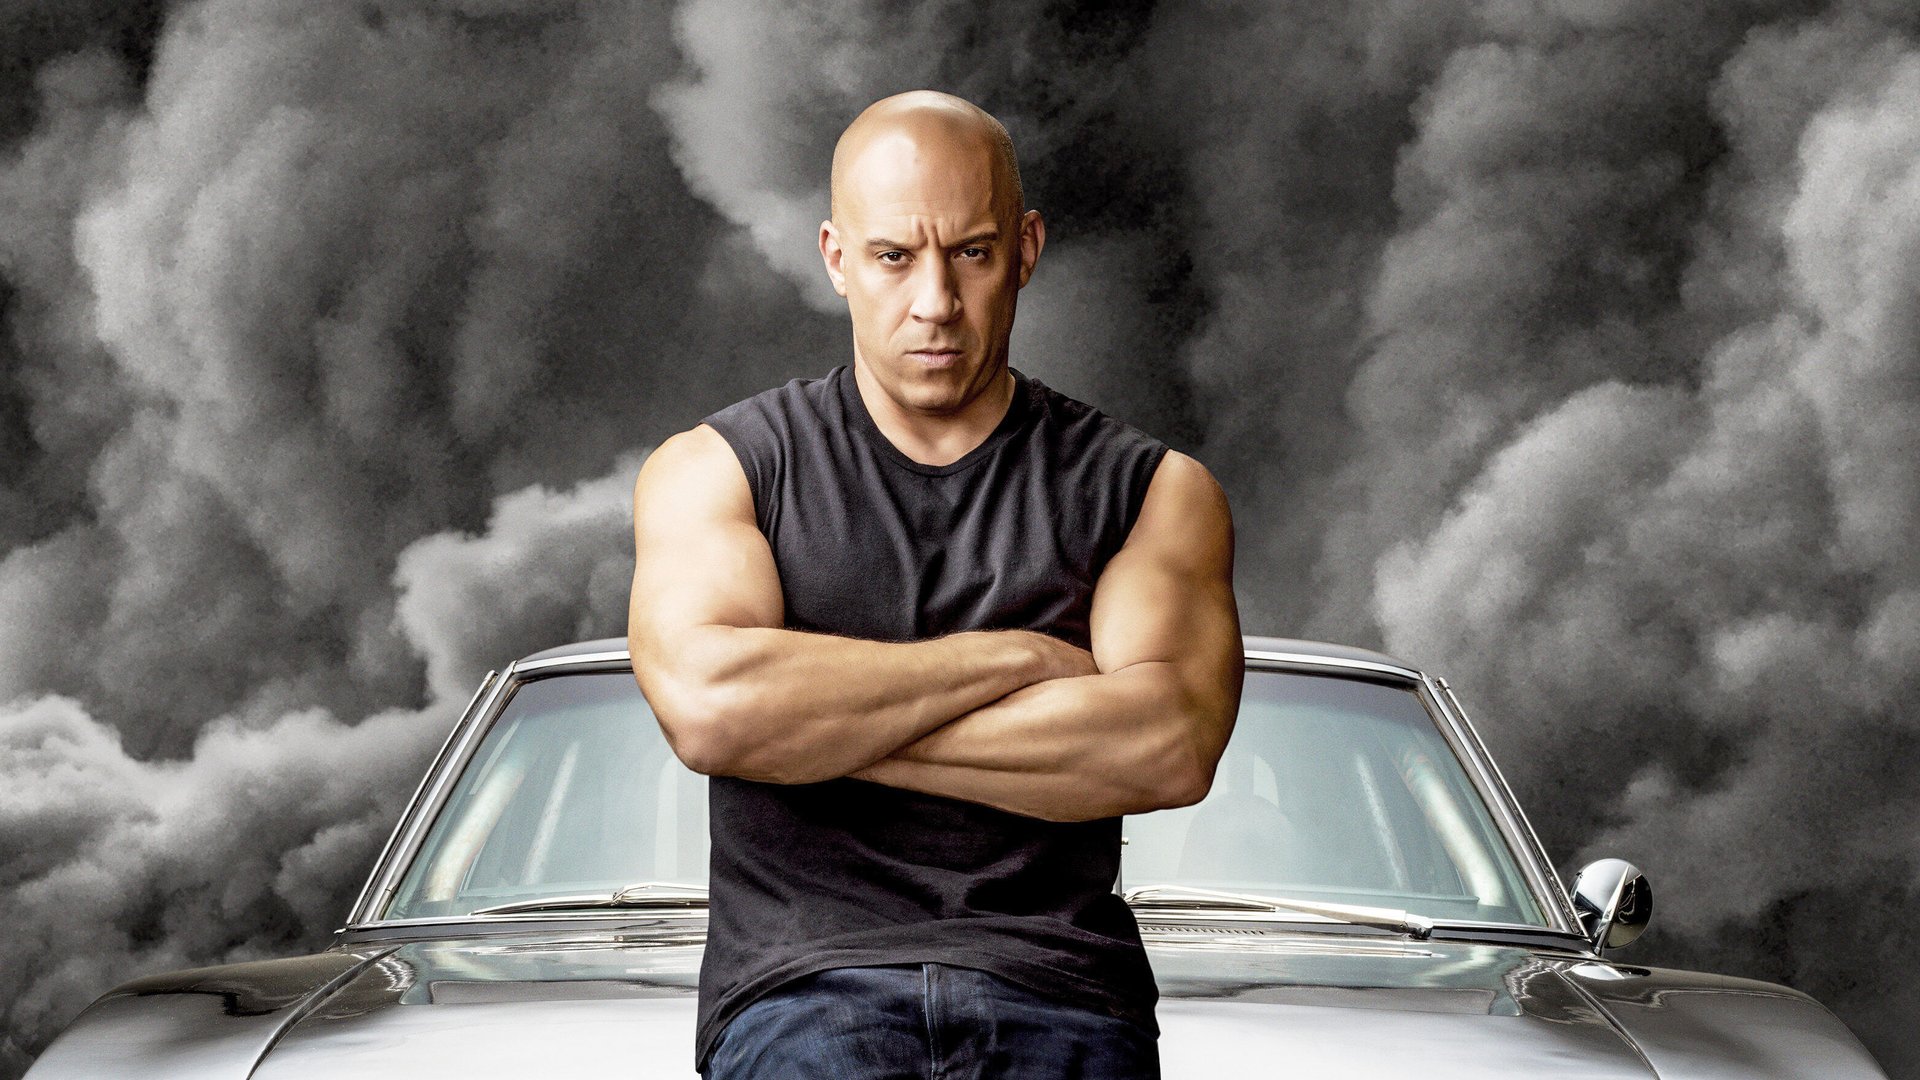 #Ist die „Fast & Furious“-Actionreihe in Gefahr? Anklage gegen Vin Diesel wegen sexueller Nötigung